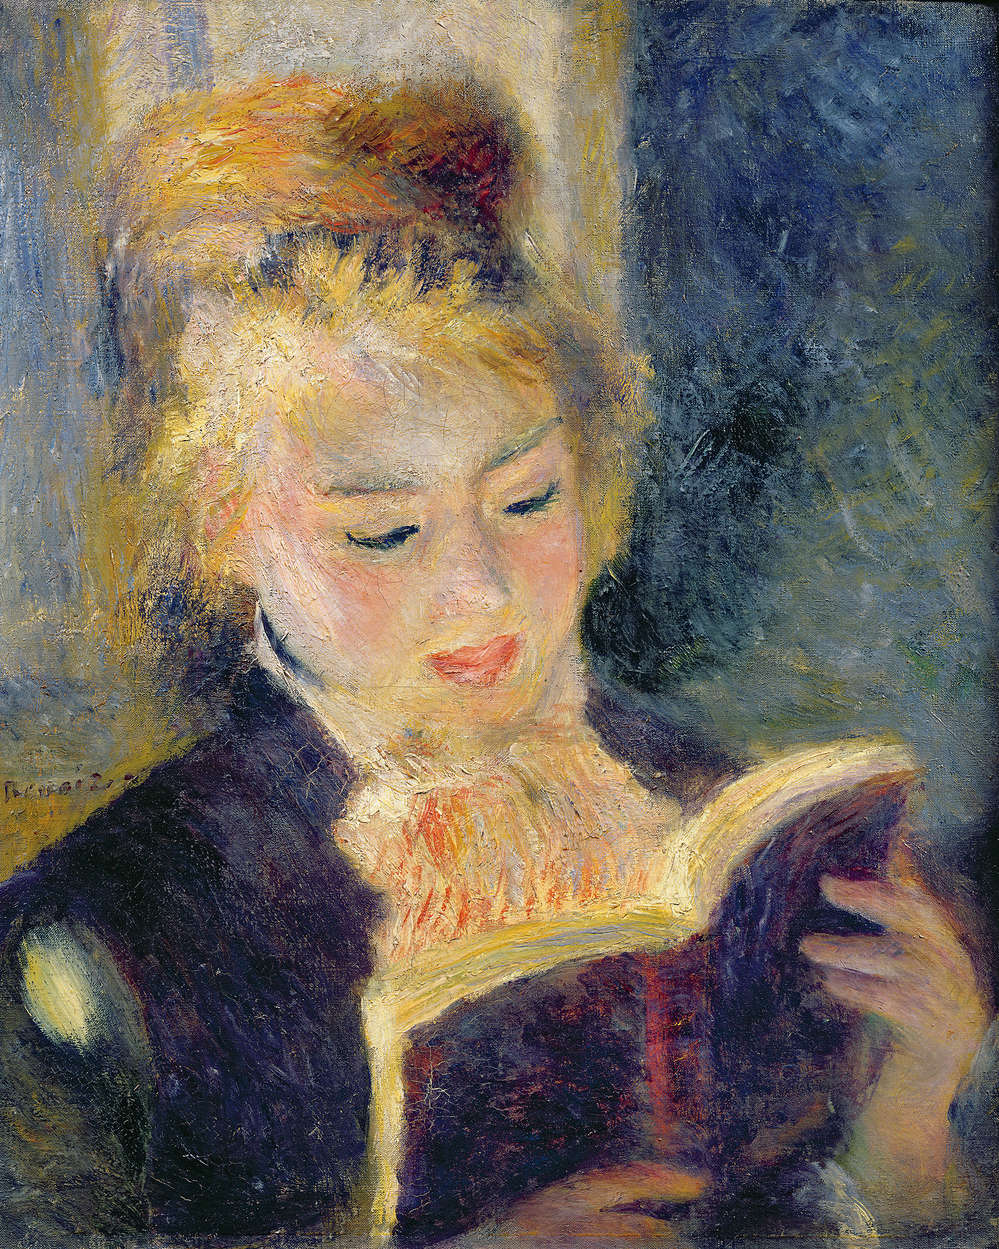             Ragazza che legge", murale di Pierre Auguste Renoir
        